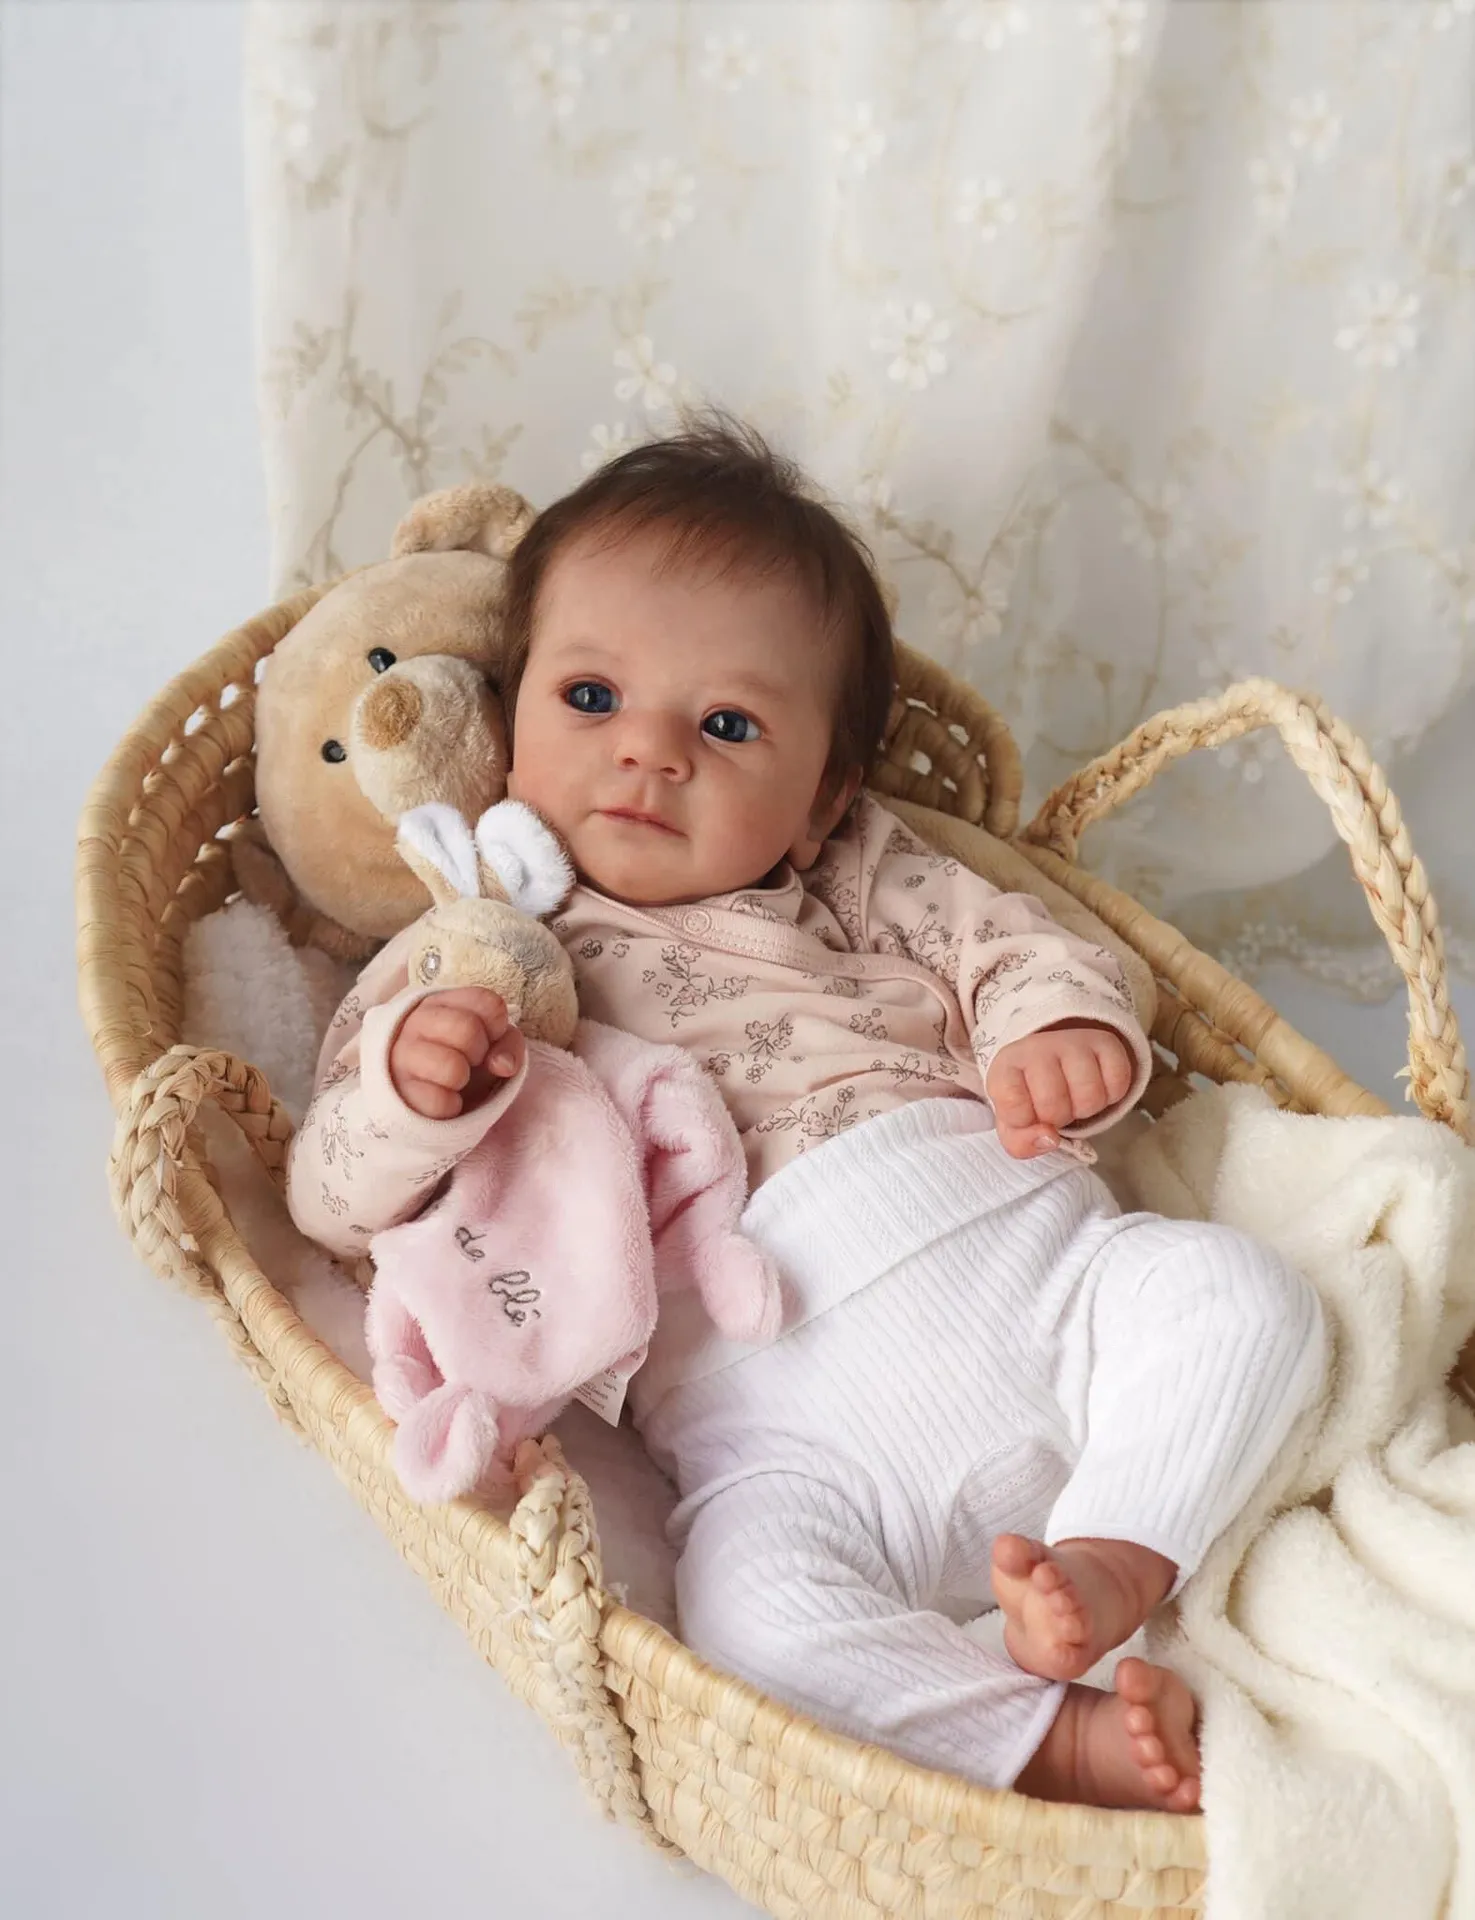 19インチリアルなリアルな愛らしい目を開いた生まれ変わった新生児人形の女の子は、青い目と赤ちゃんのおしゃぶりと名付けられたサムという名前